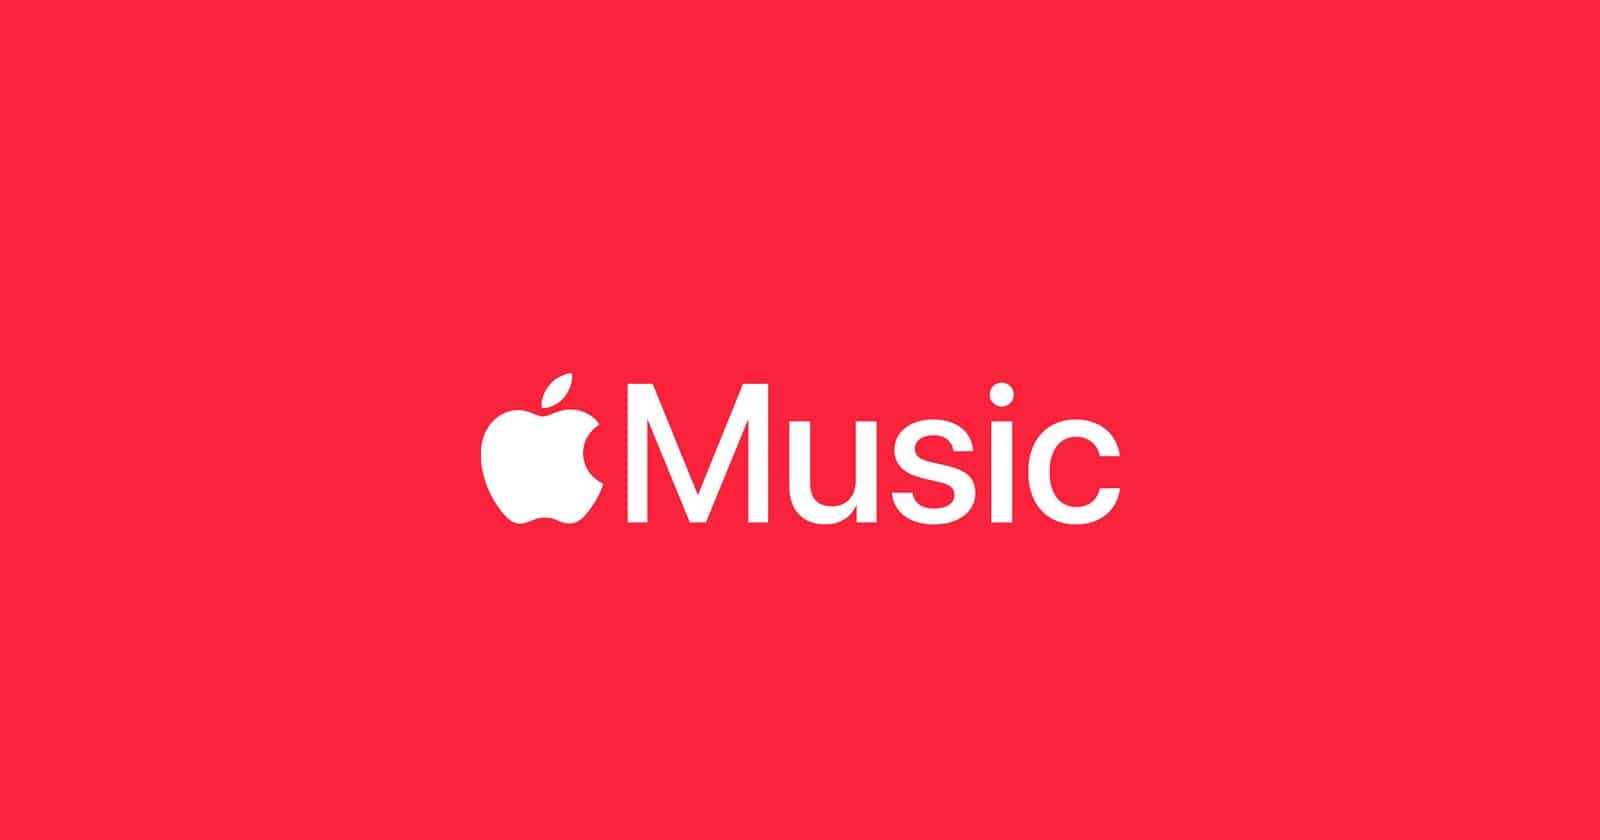 Apple Musicten Sok Zam Karari Aylik Abonelik Kac TL Oldu Apple Music'ten Şok Zam Kararı! Aylık Abonelik Kaç TL Oldu?